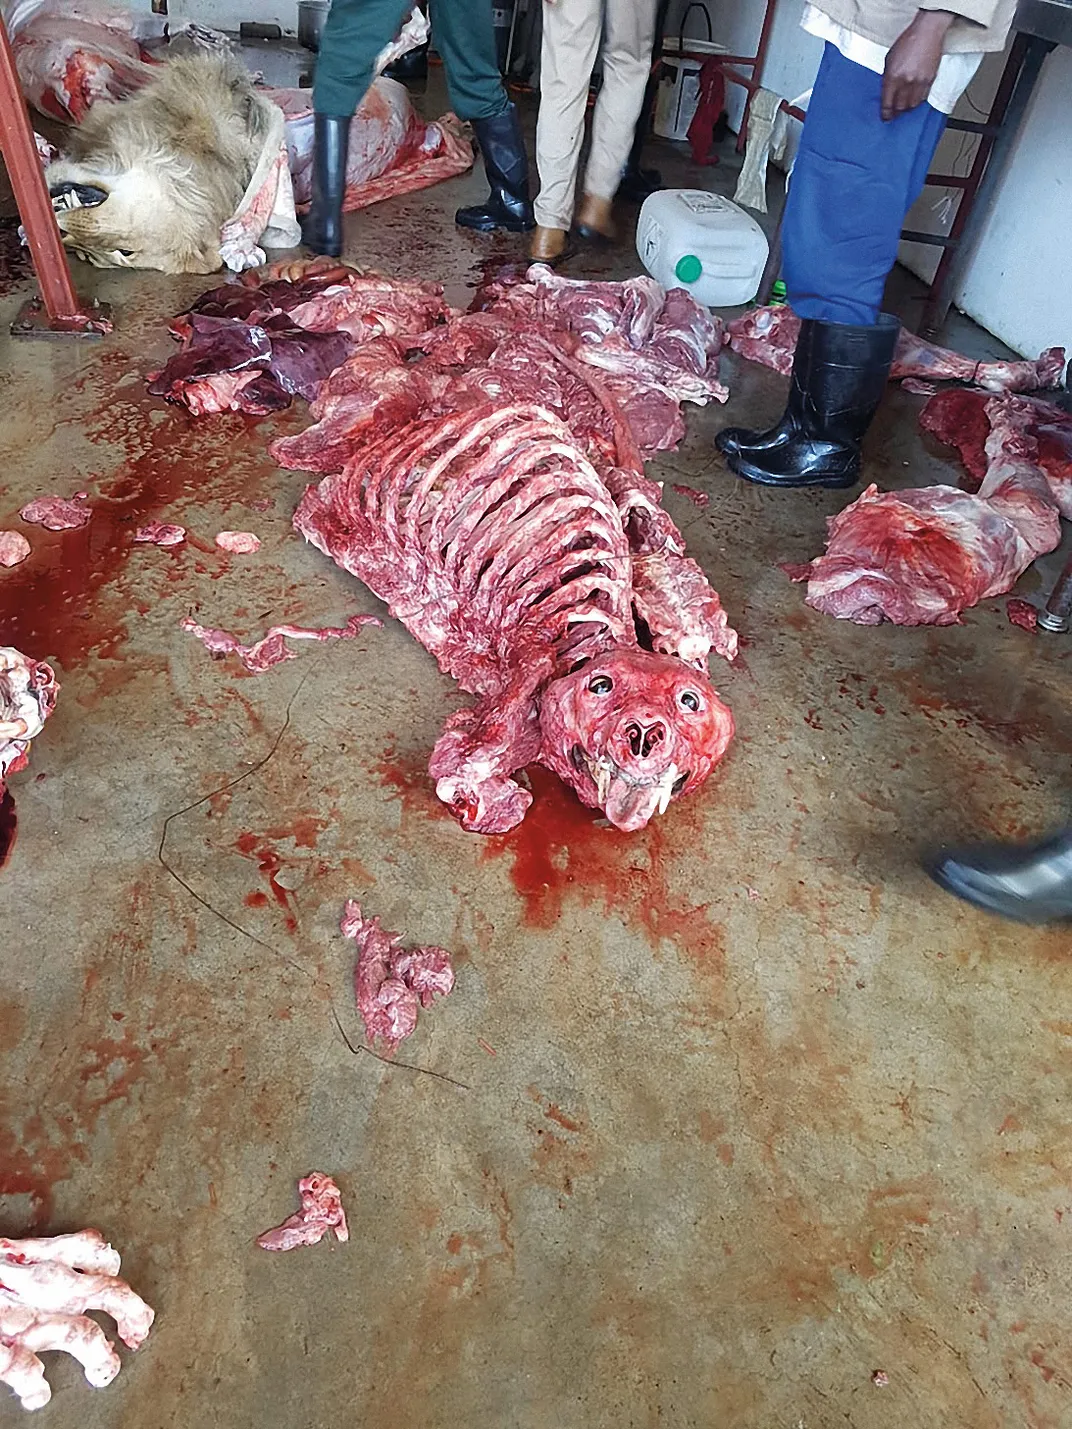 Lion carcass